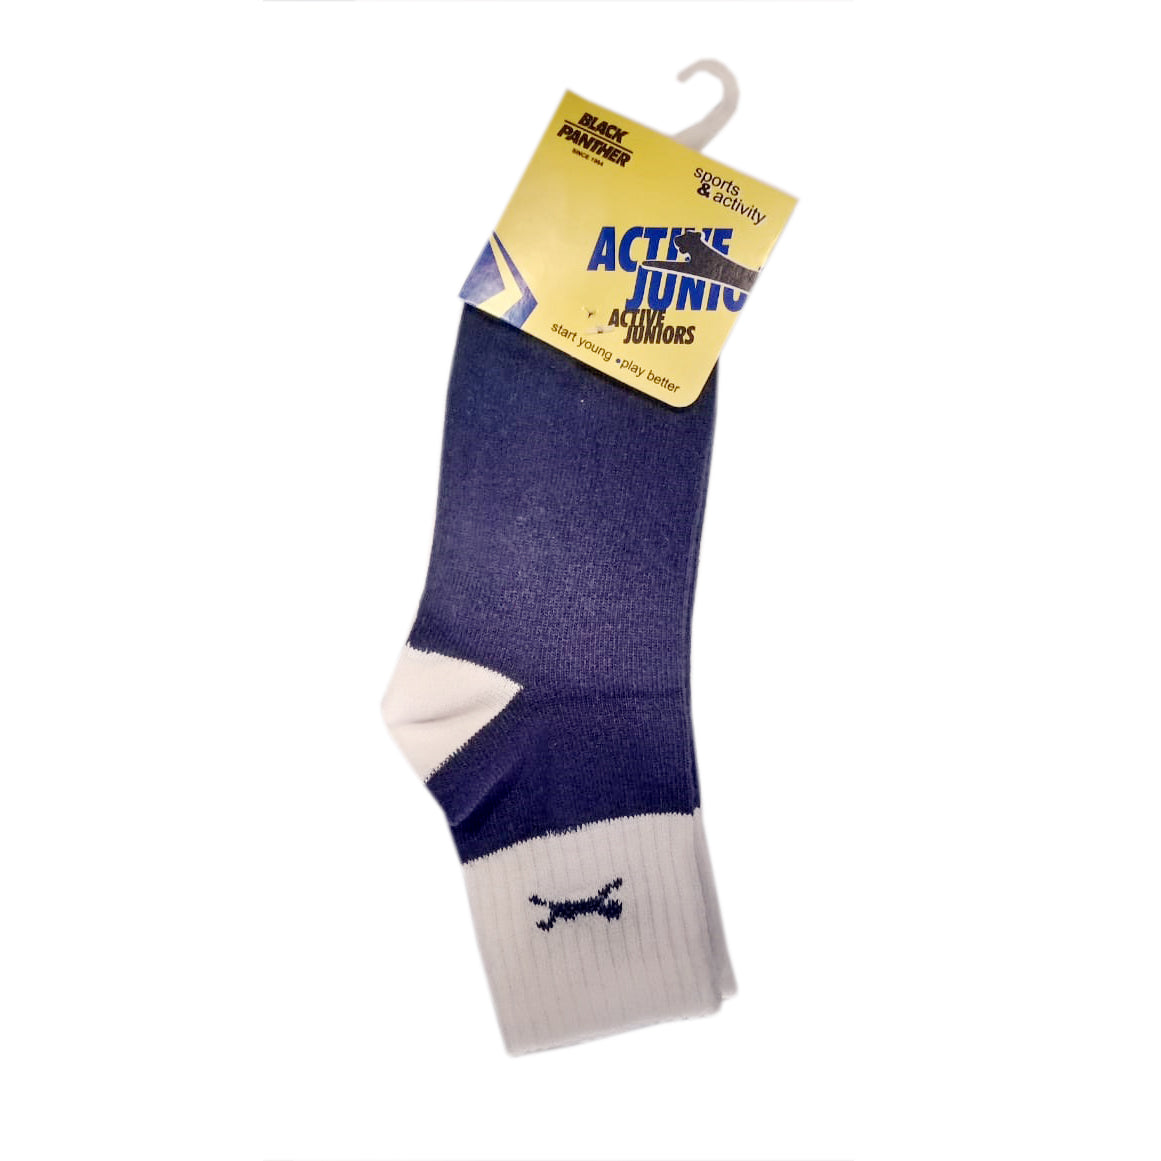 Black Panther Active Socks, Assorted Color - Best Price online Prokicksports.com